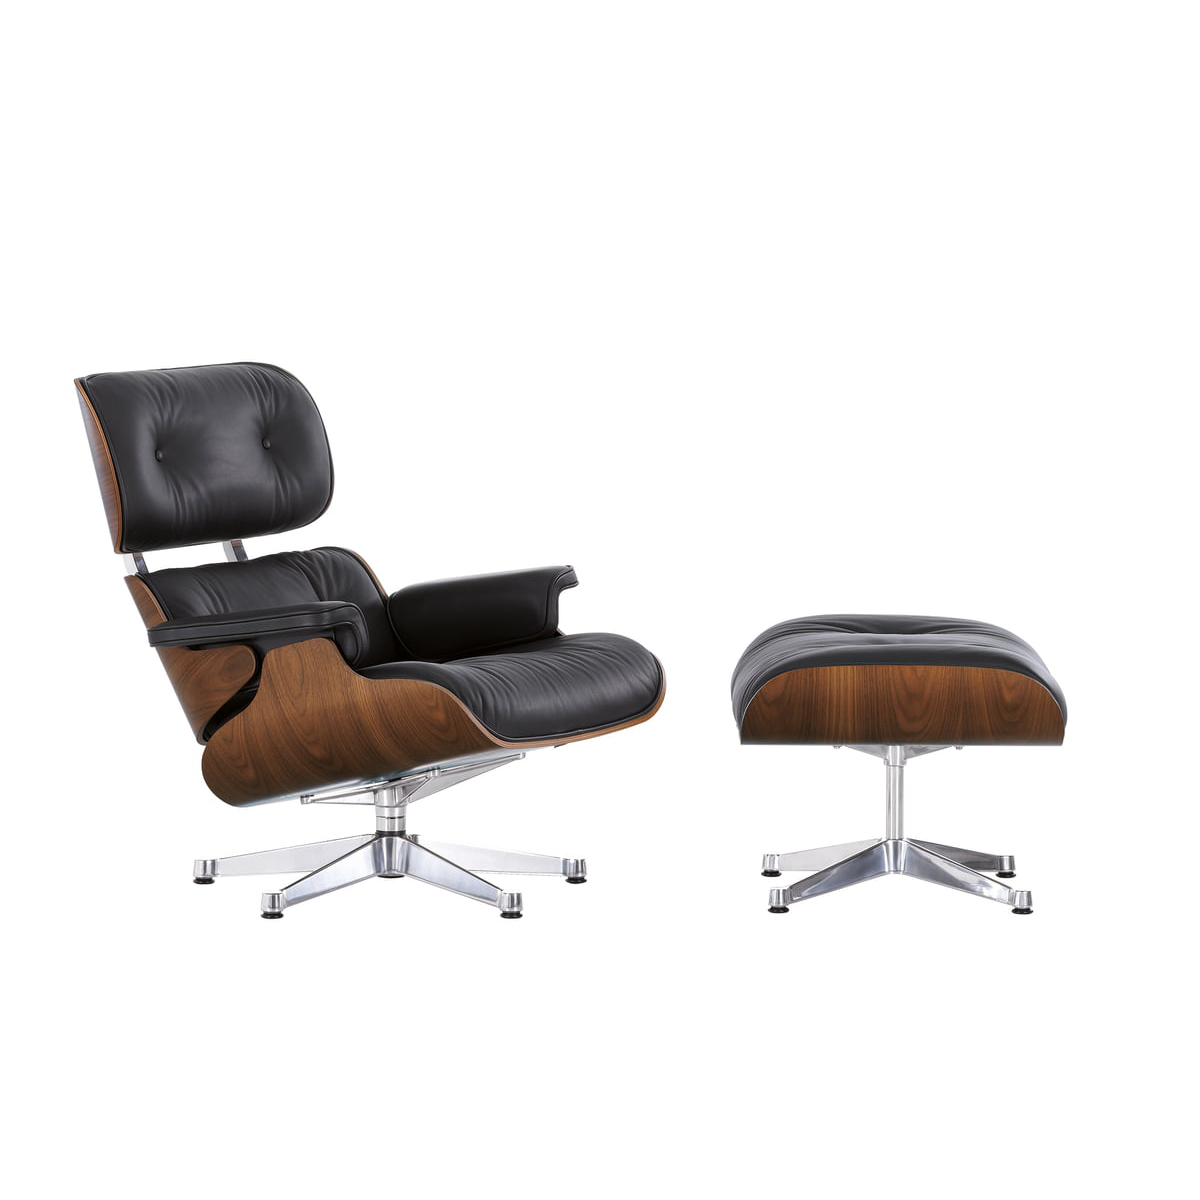 Vitra - Eames Lounge Chair Sessel & Ottoman klassische Maße - schwarz nero/Leder Premium F 66 (nachhaltig)/Schale Nussbaum schwarz pigmentiert/Gestell von Vitra